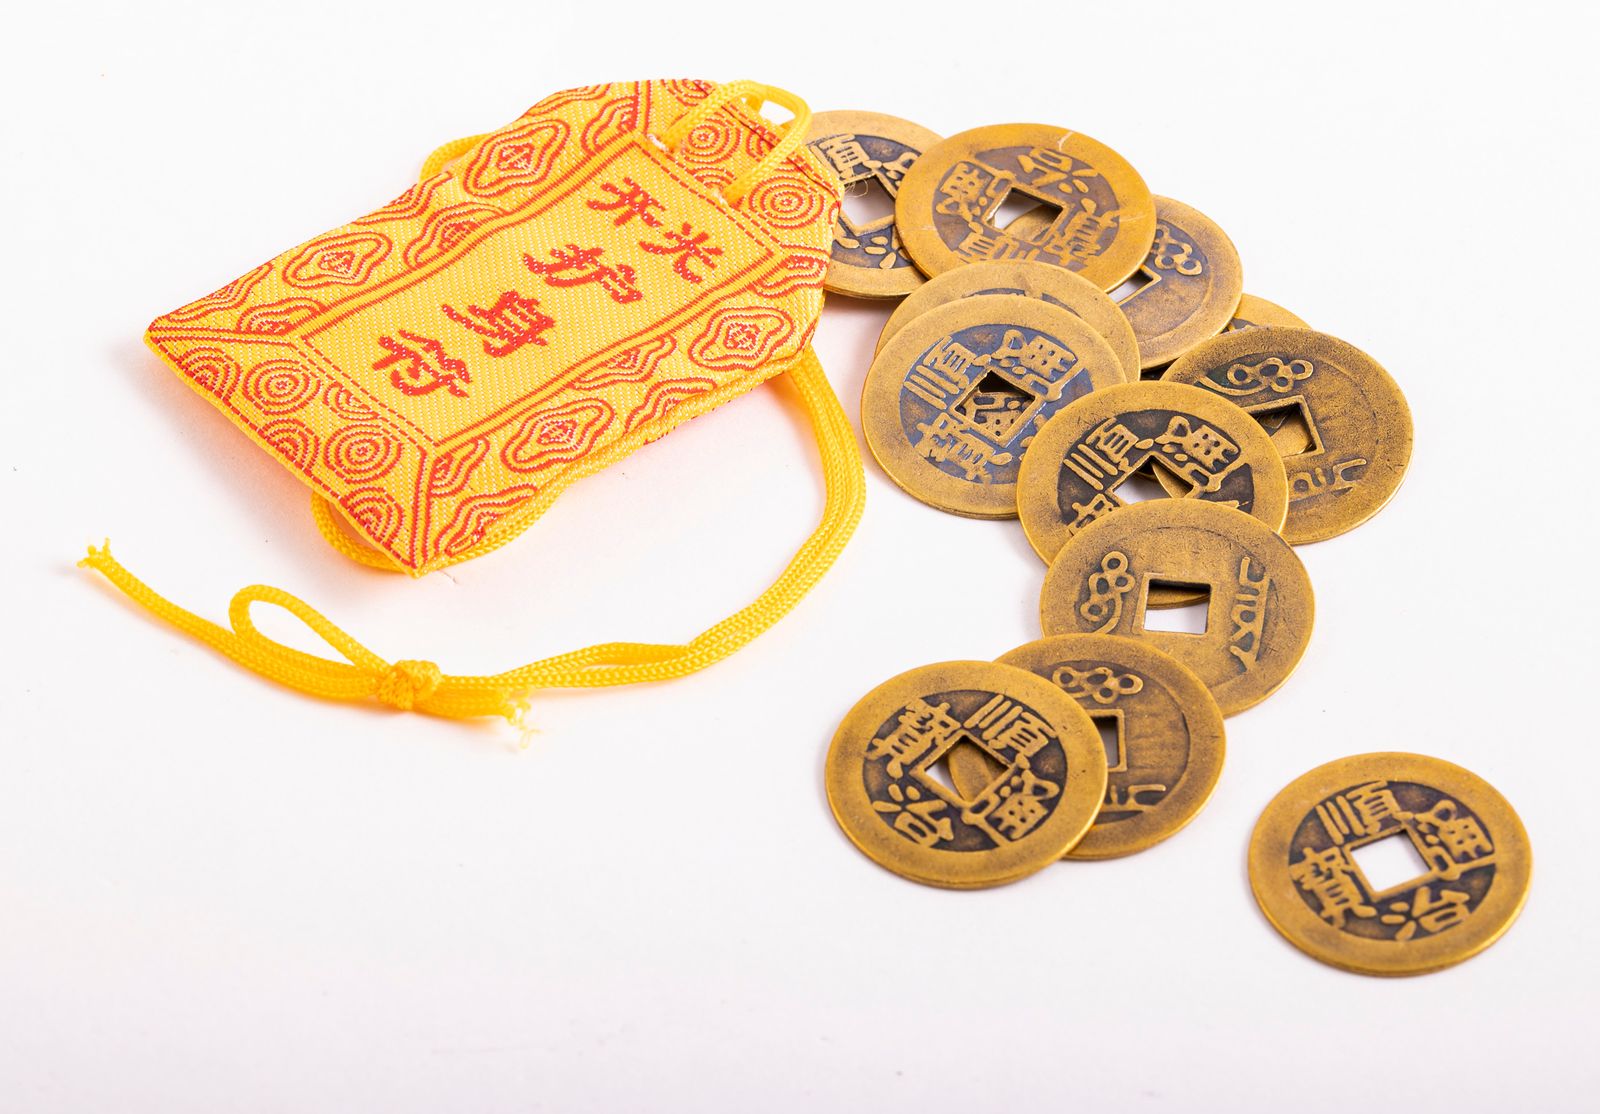 Große Chinesische Glücksmünzen